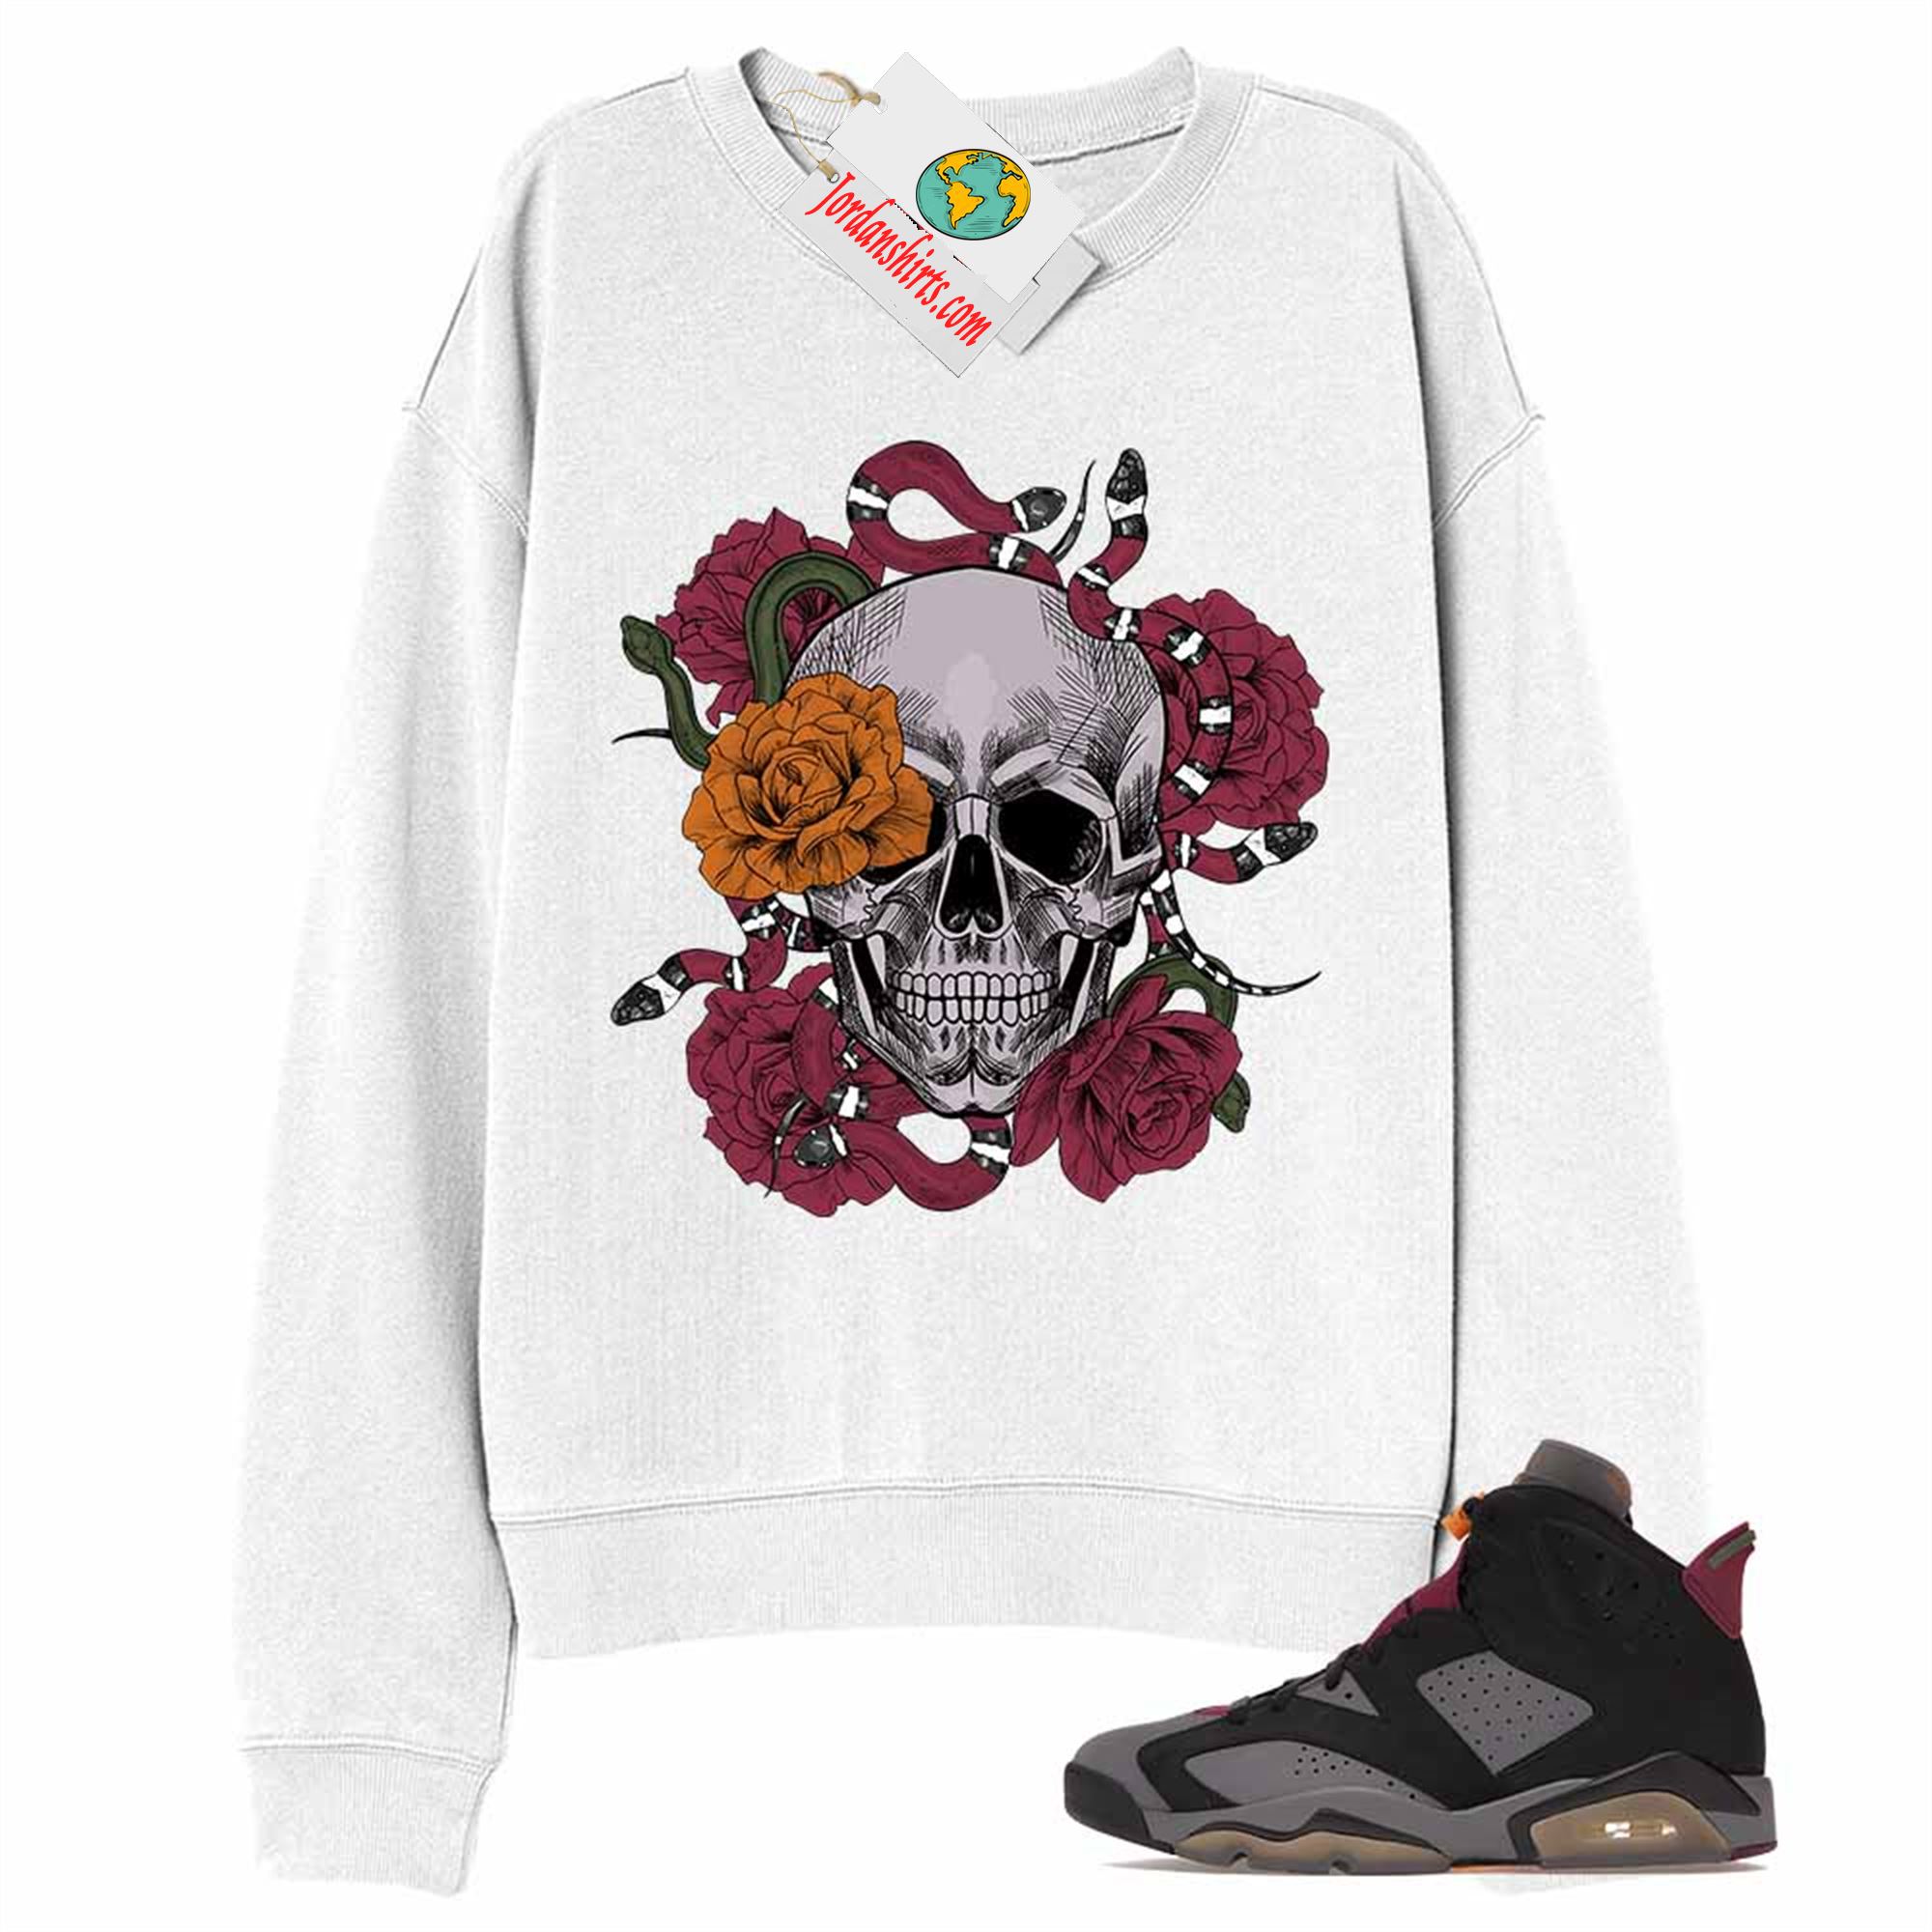 Jordan 6 Sweatshirt, Snake Skull Rose White Sweatshirt Air Jordan 6 Bordeaux 6s Size Up To 5xl